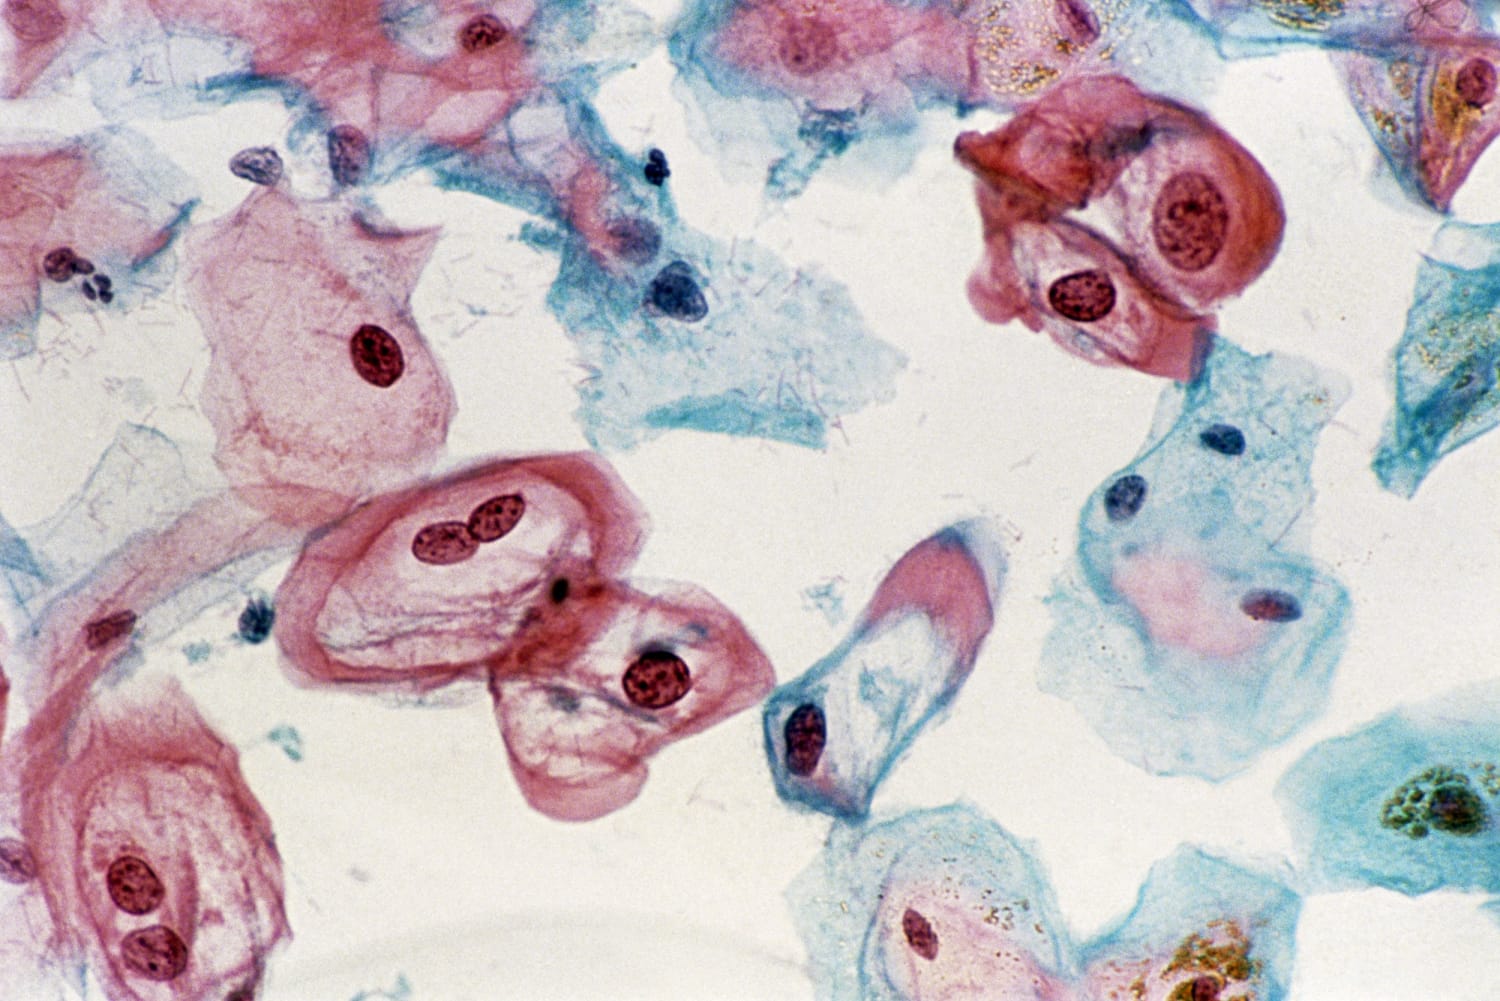 Humán papillómavírus (HPV) vizsgálat | Lab Tests Online-HU Hpv vírus ansteckung módon